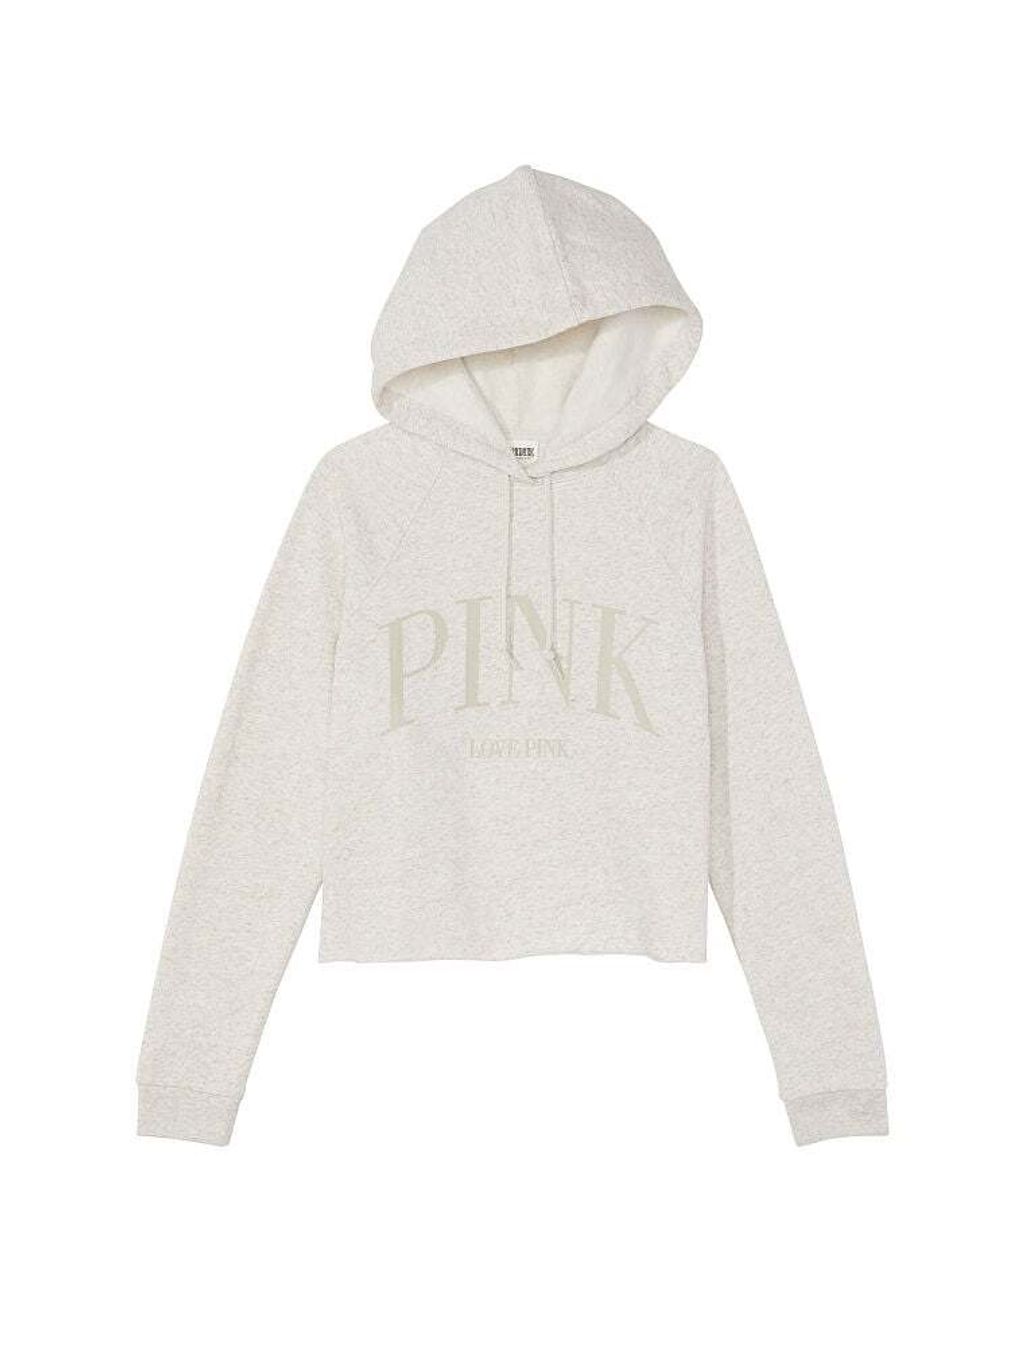 vs pink hoodie